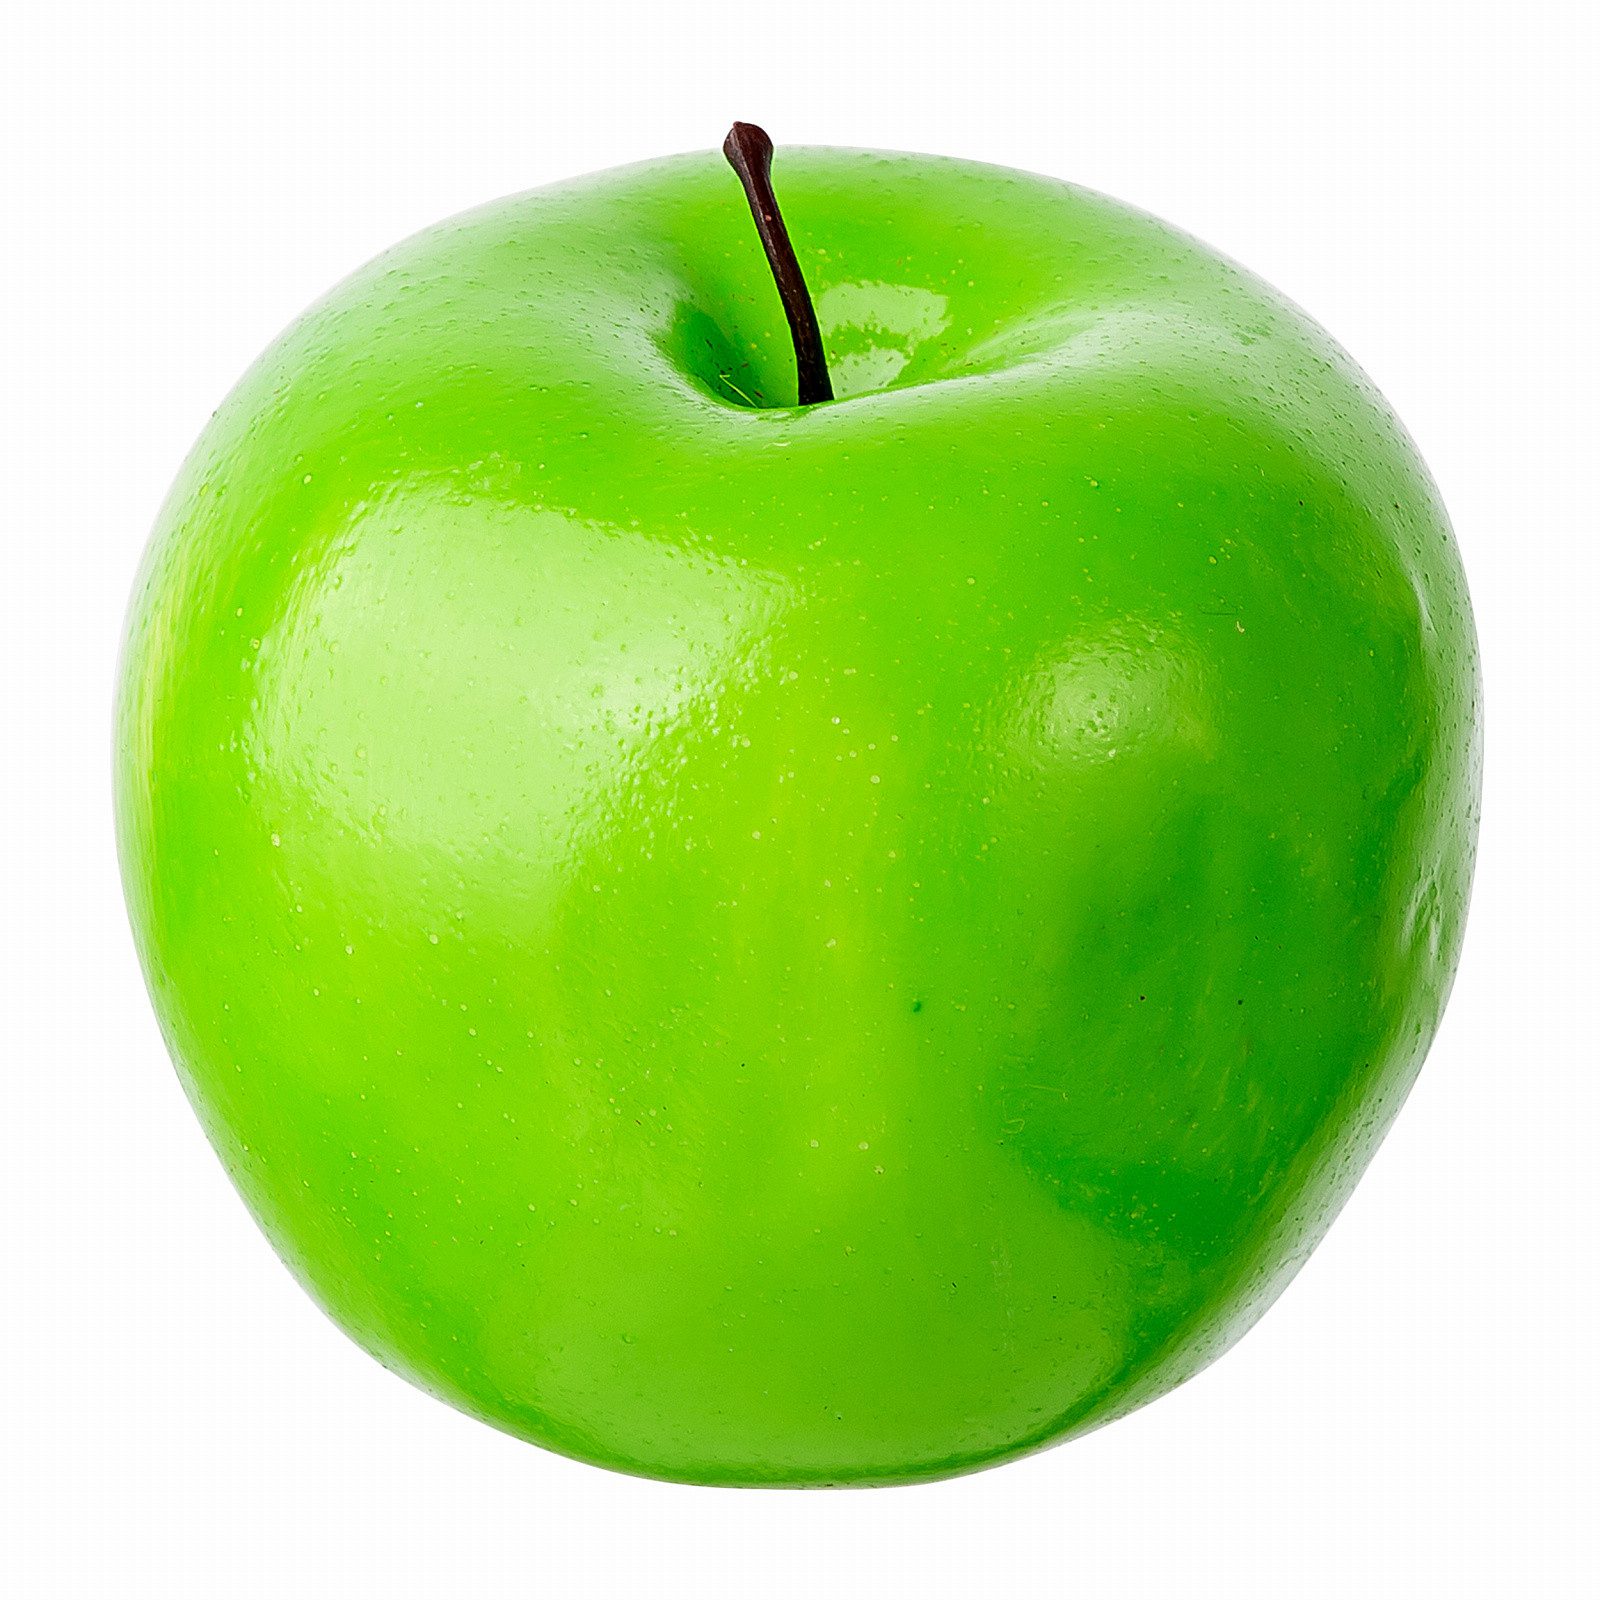 Купить яблоко недорого. Муляж яблока. Яблоки зеленые. Муляж фруктов яблоко. Яблоки зеленые искусственные.